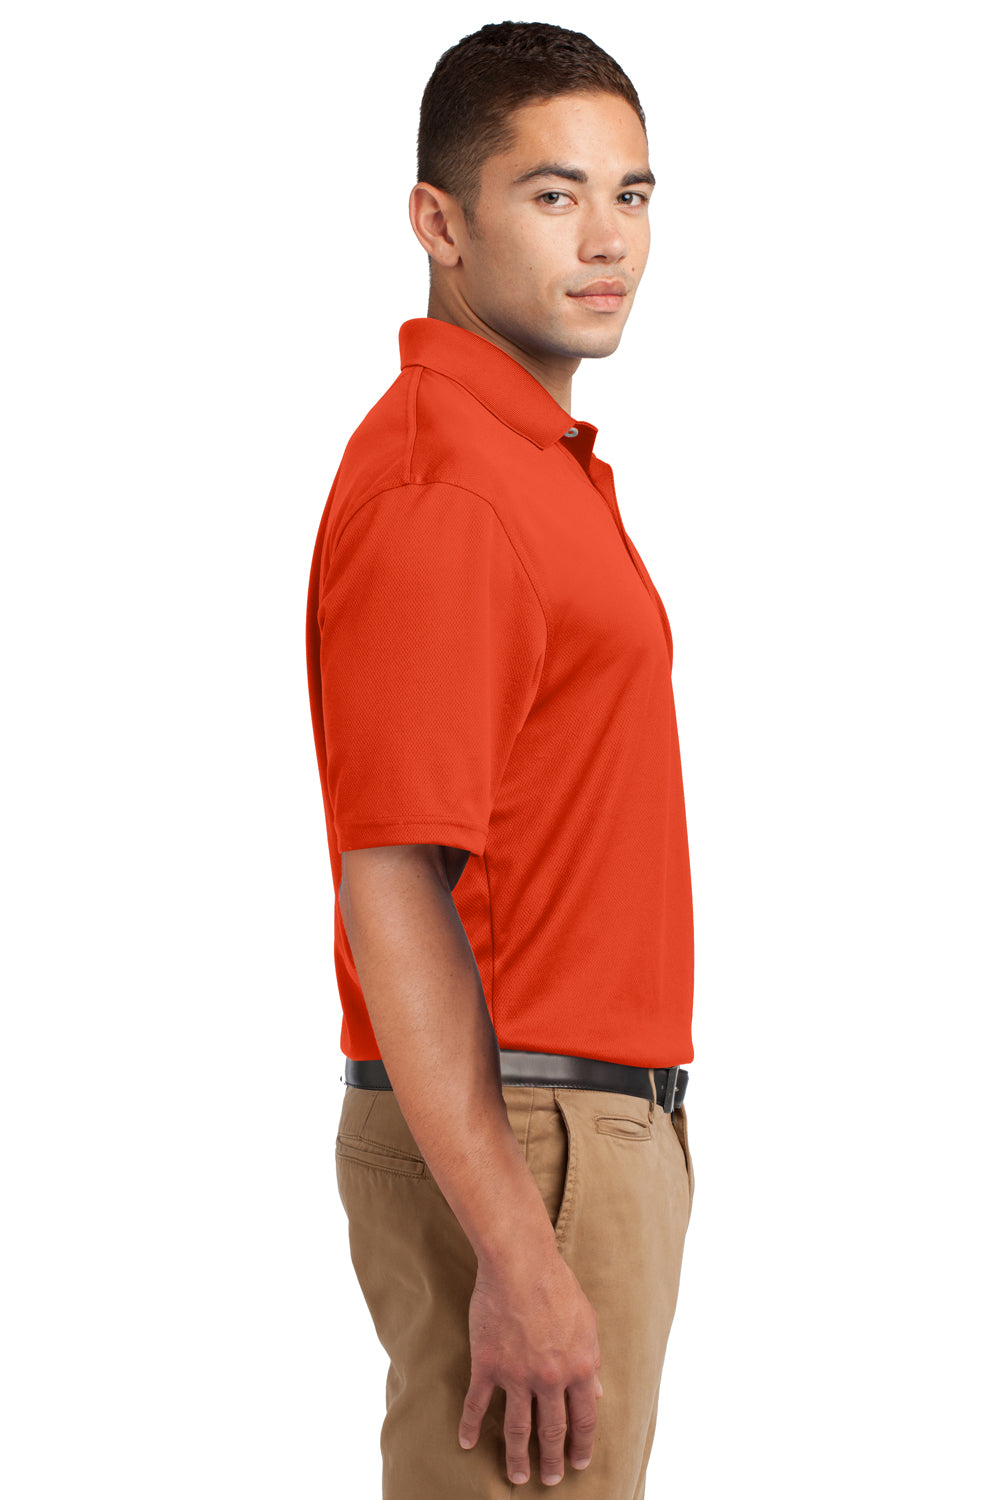 Sport-Tek K469 Mens Dri-Mesh Moisture Wicking Short Sleeve Polo Shirt Orange Side